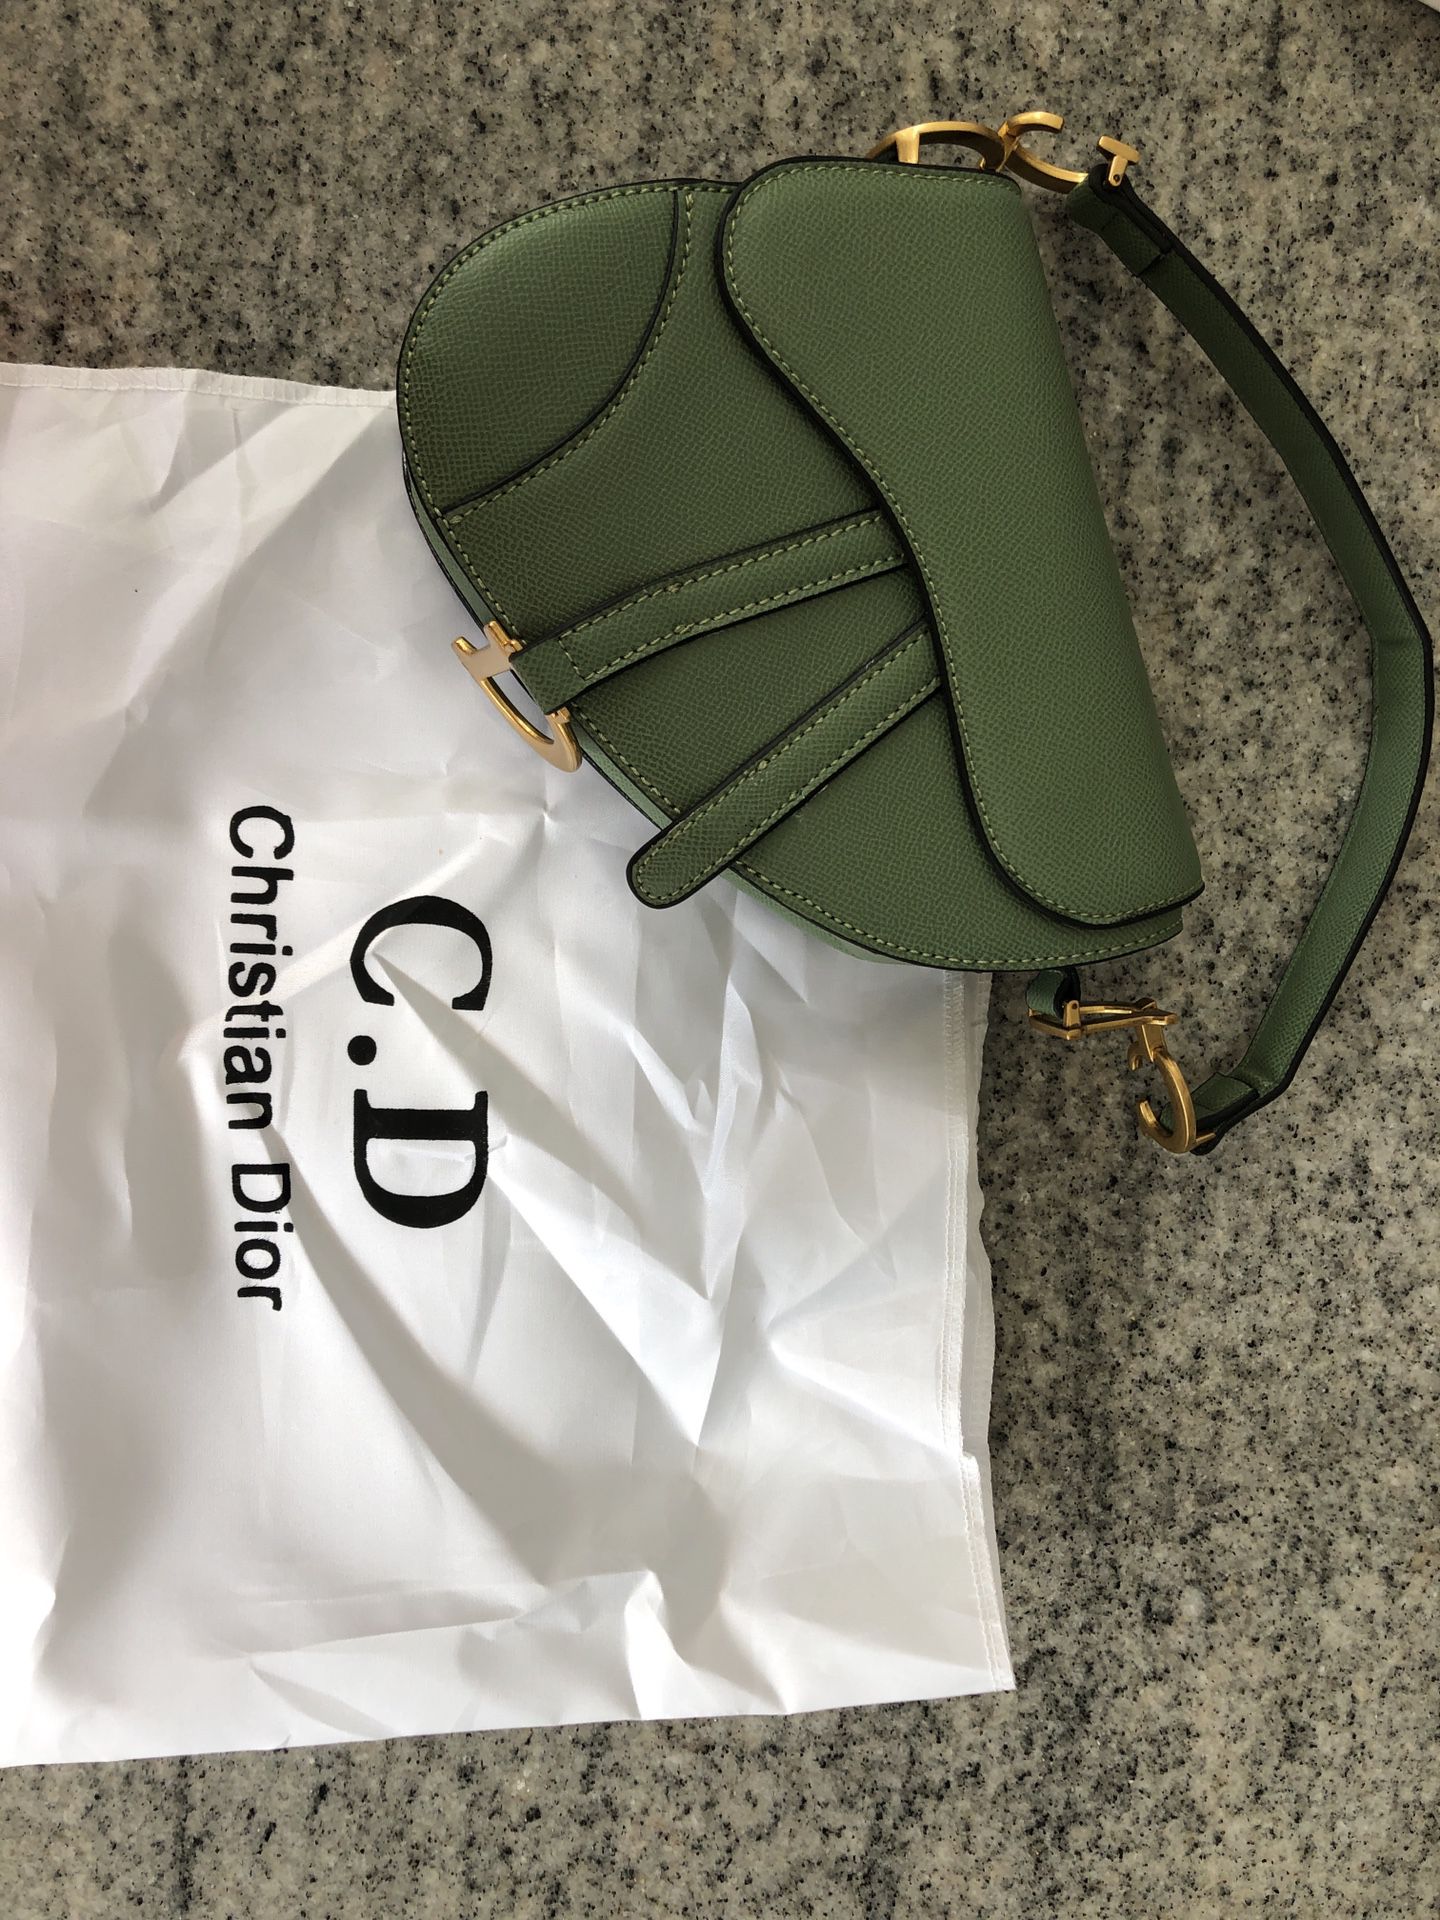 Christian Dior saddle bag- green